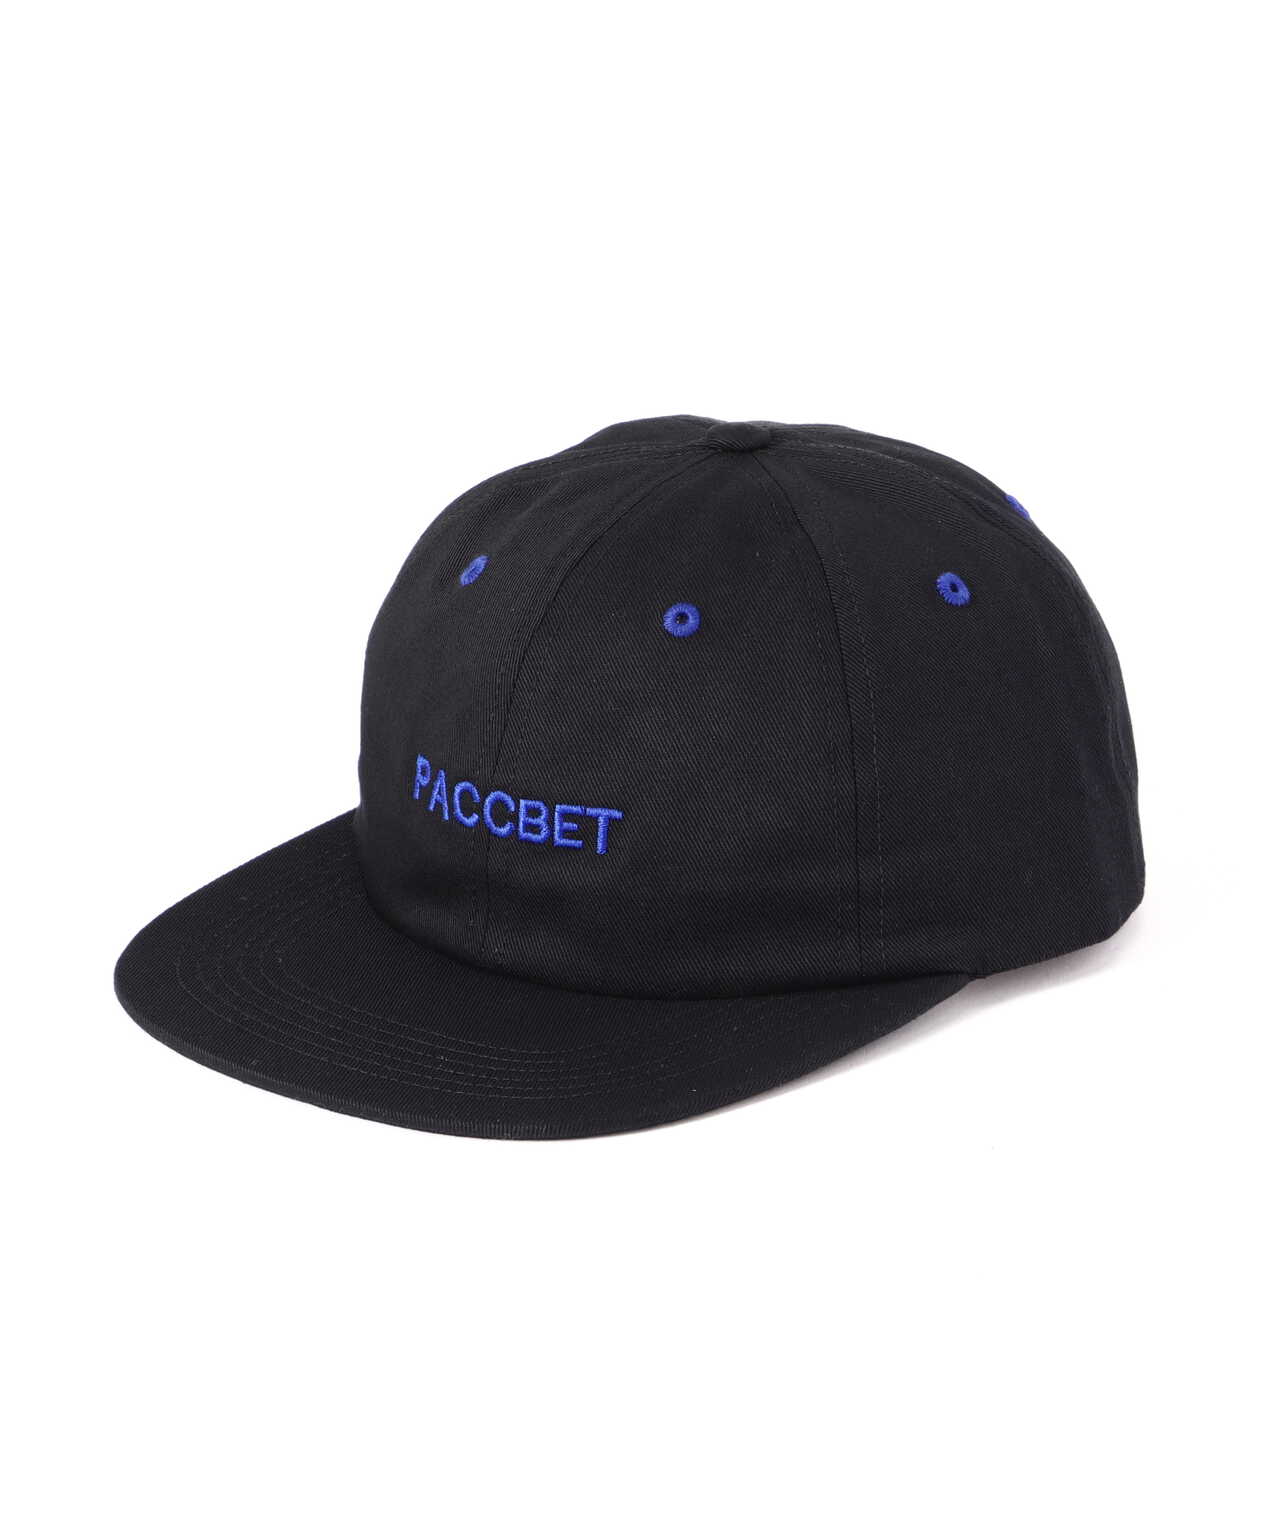 RASSVET（PACCVET）/ラスベート/6PANEL PACCBET CAP/ロゴキャップ